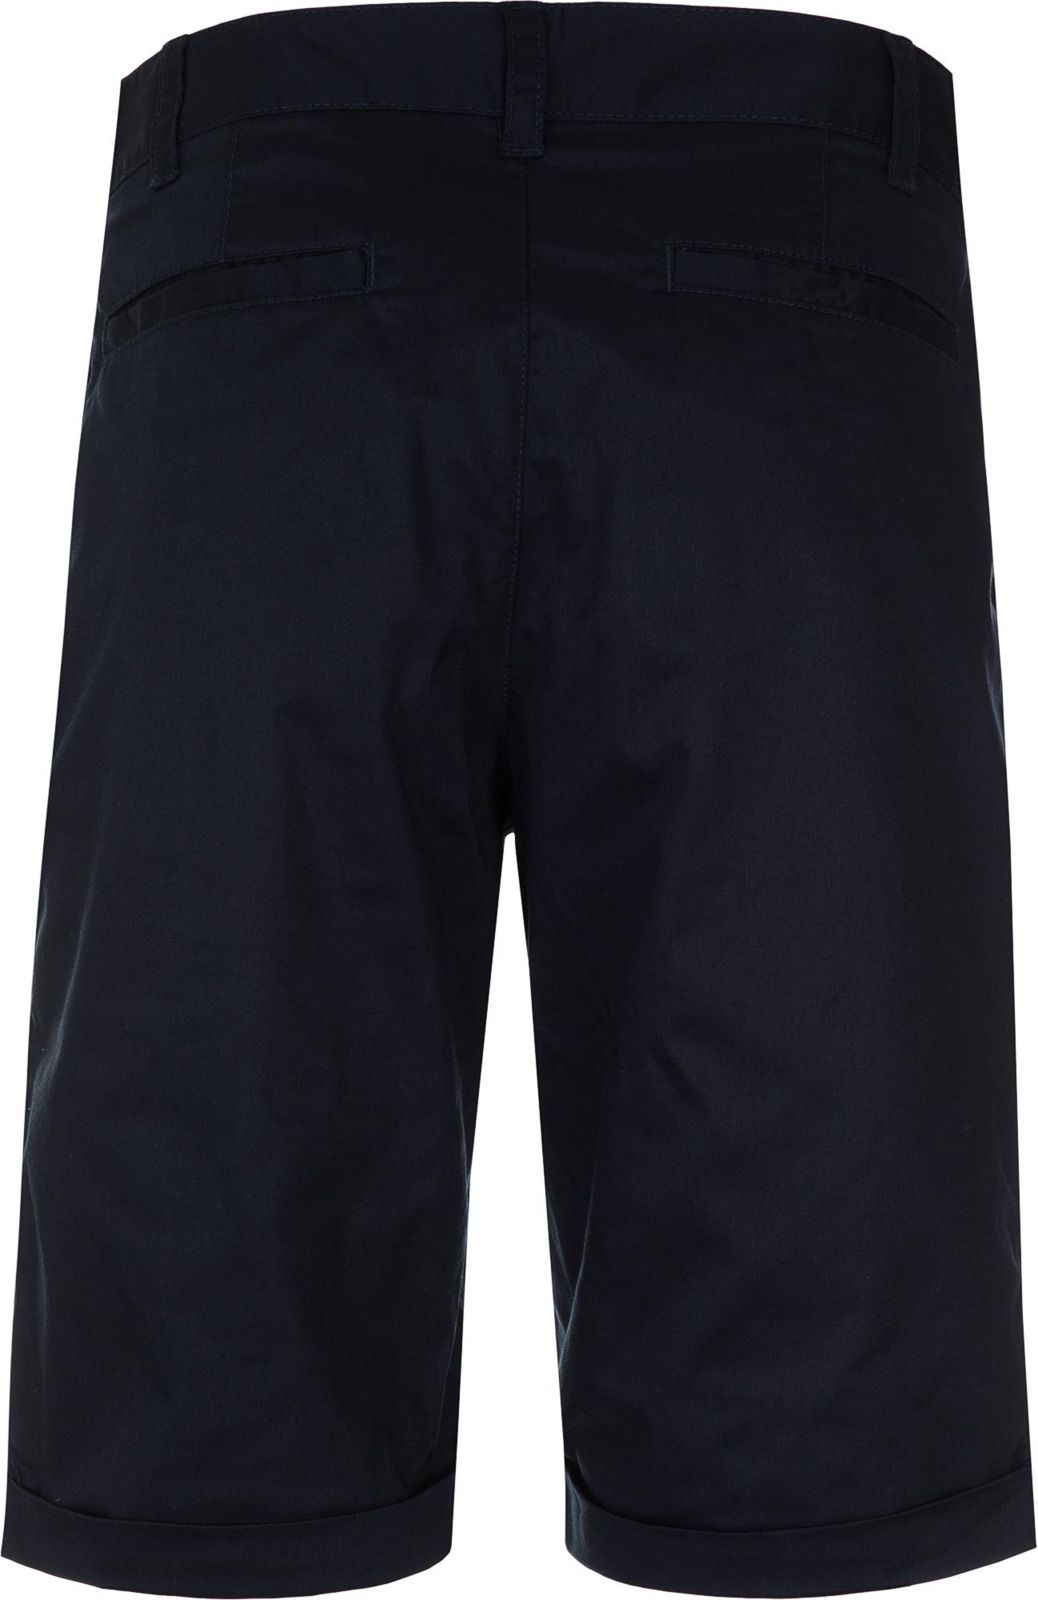   Fila Men's Shorts, : -. 100086-Z4.  S (46)